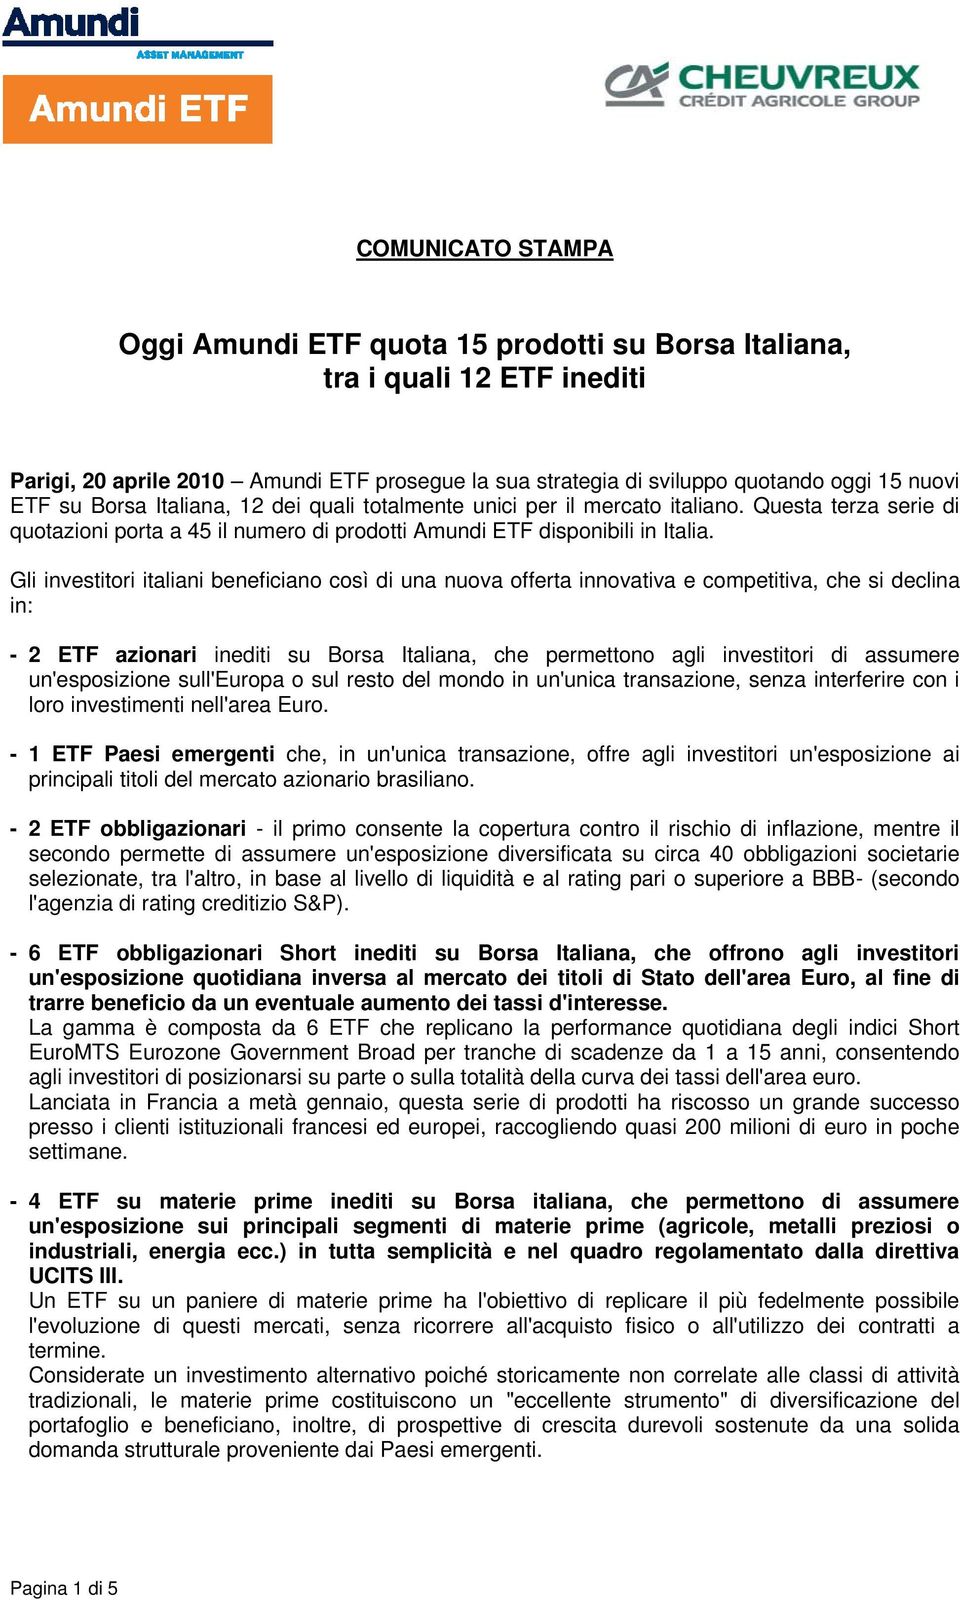 Gli investitori italiani beneficiano così di una nuova offerta innovativa e competitiva, che si declina in: - 2 ETF azionari inediti su Borsa Italiana, che permettono agli investitori di assumere